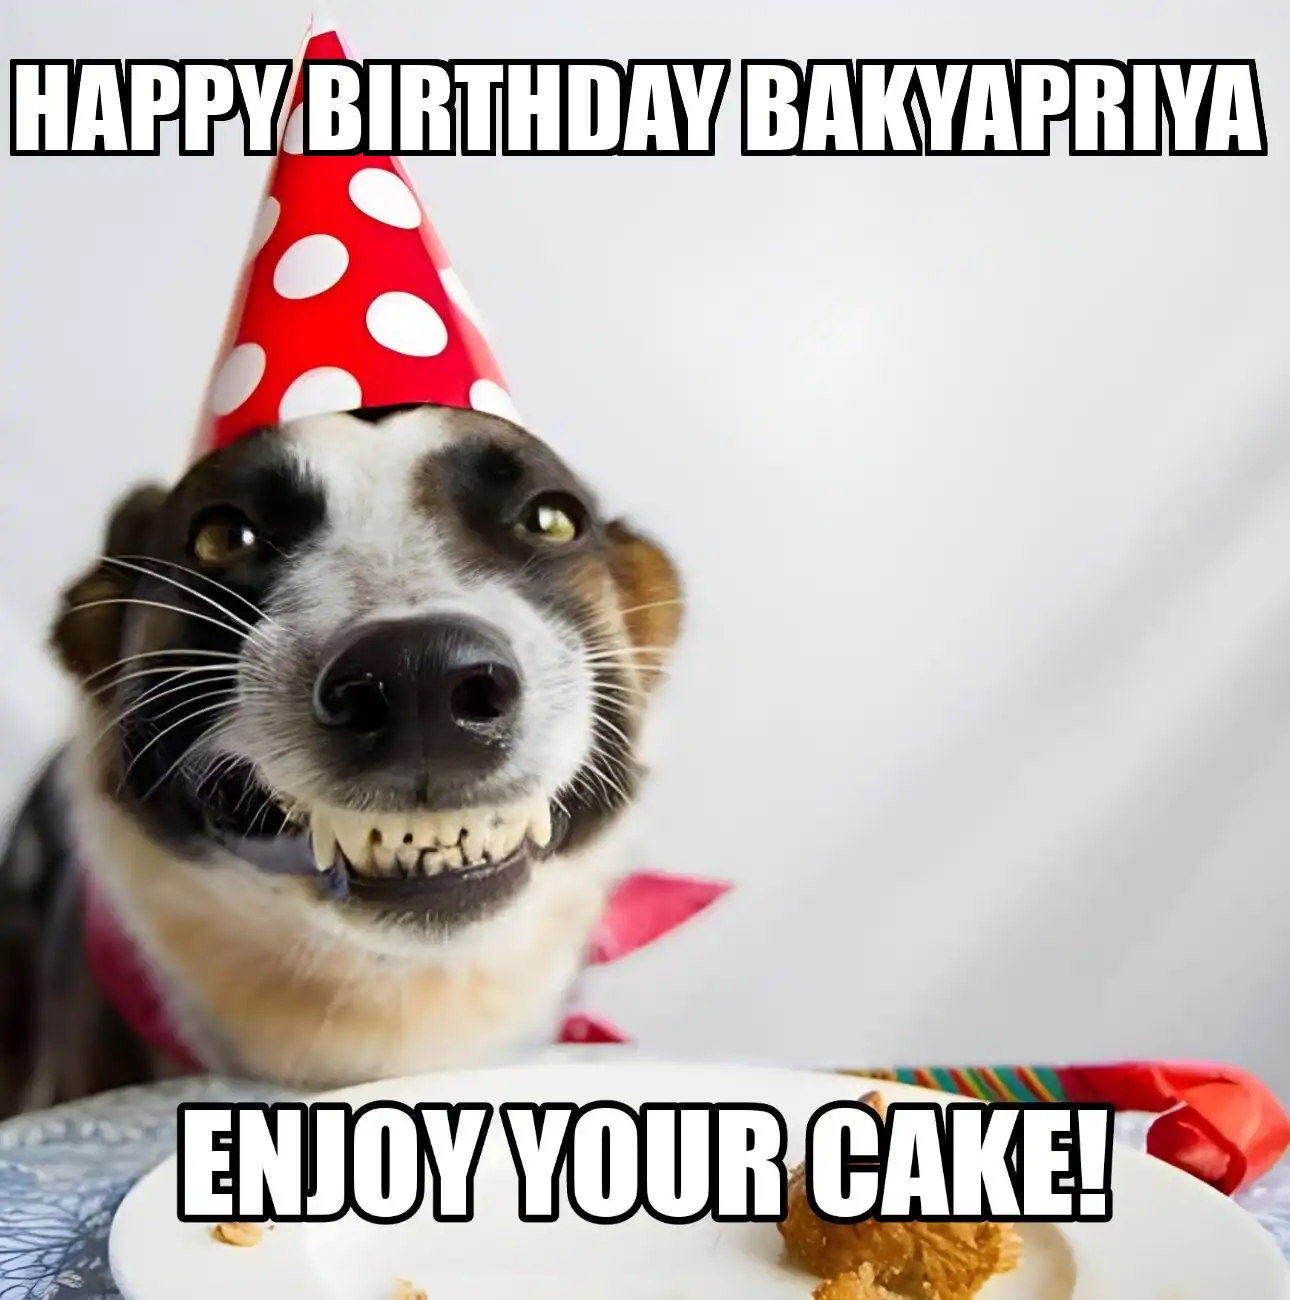 Happy Birthday Bakyapriya Enjoy Your Cake Dog Meme